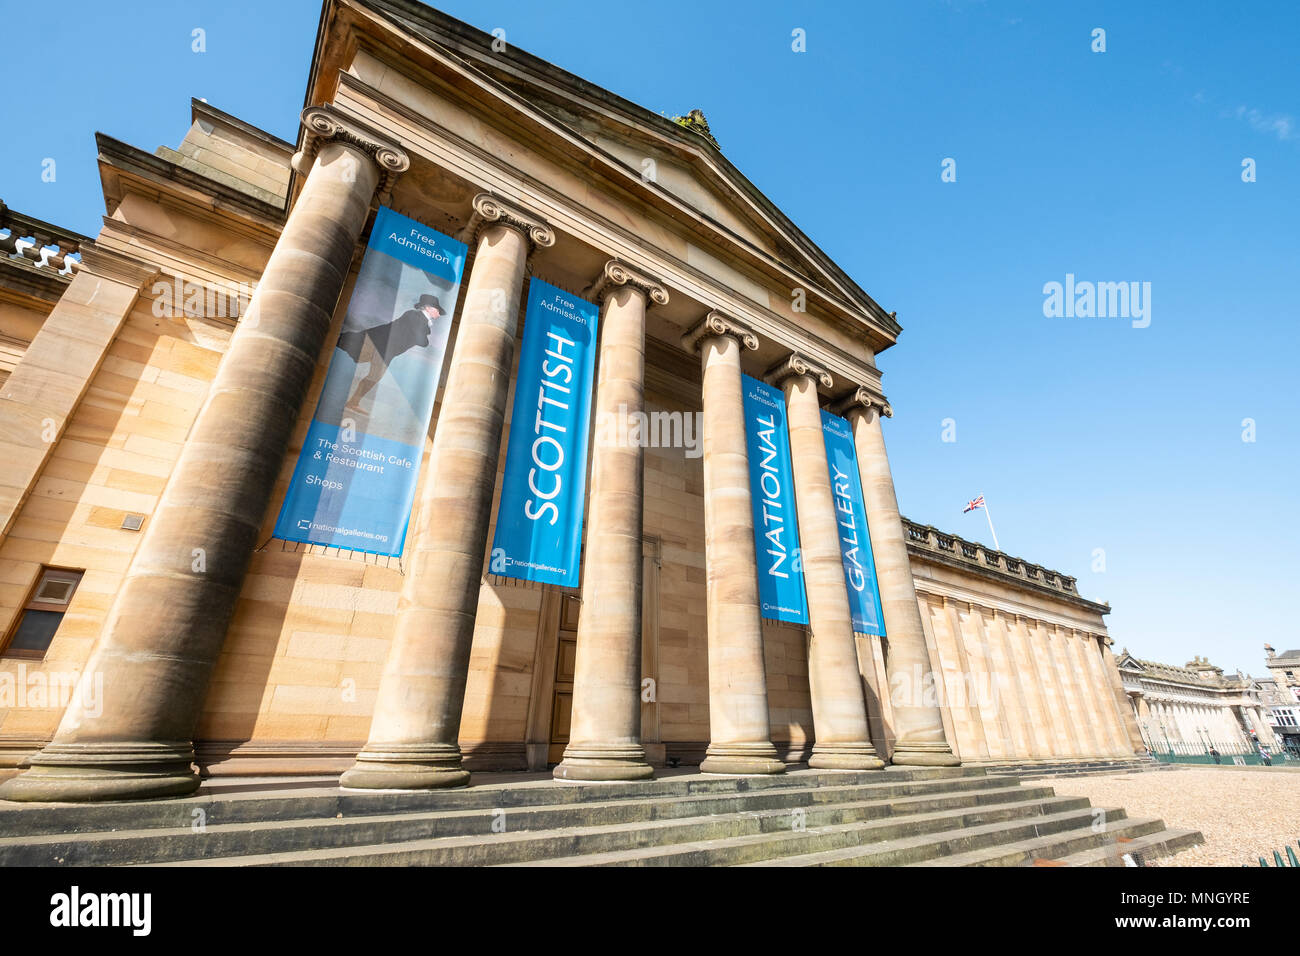 Äußere des Scottish National Gallery, Art Museum, auf dem Damm in Edinburgh, Schottland, Vereinigtes Königreich, UK. Stockfoto